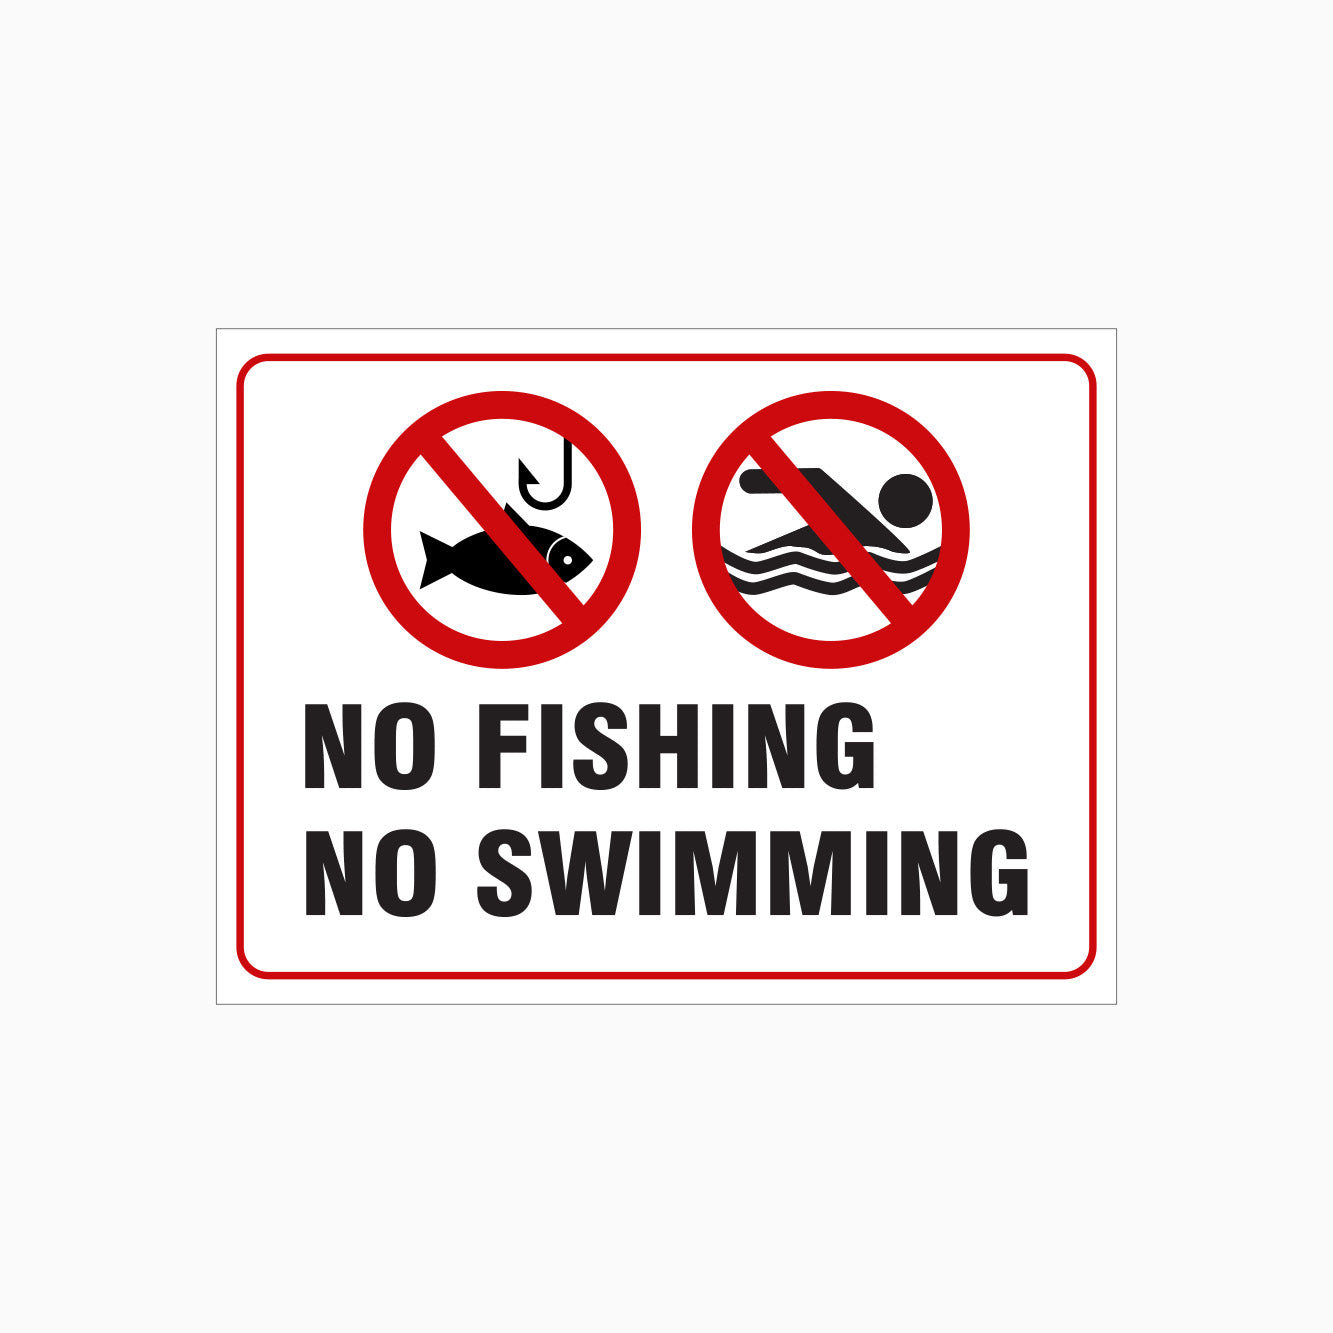 NO FISHING SIGN - NO SWIMMING SIGN